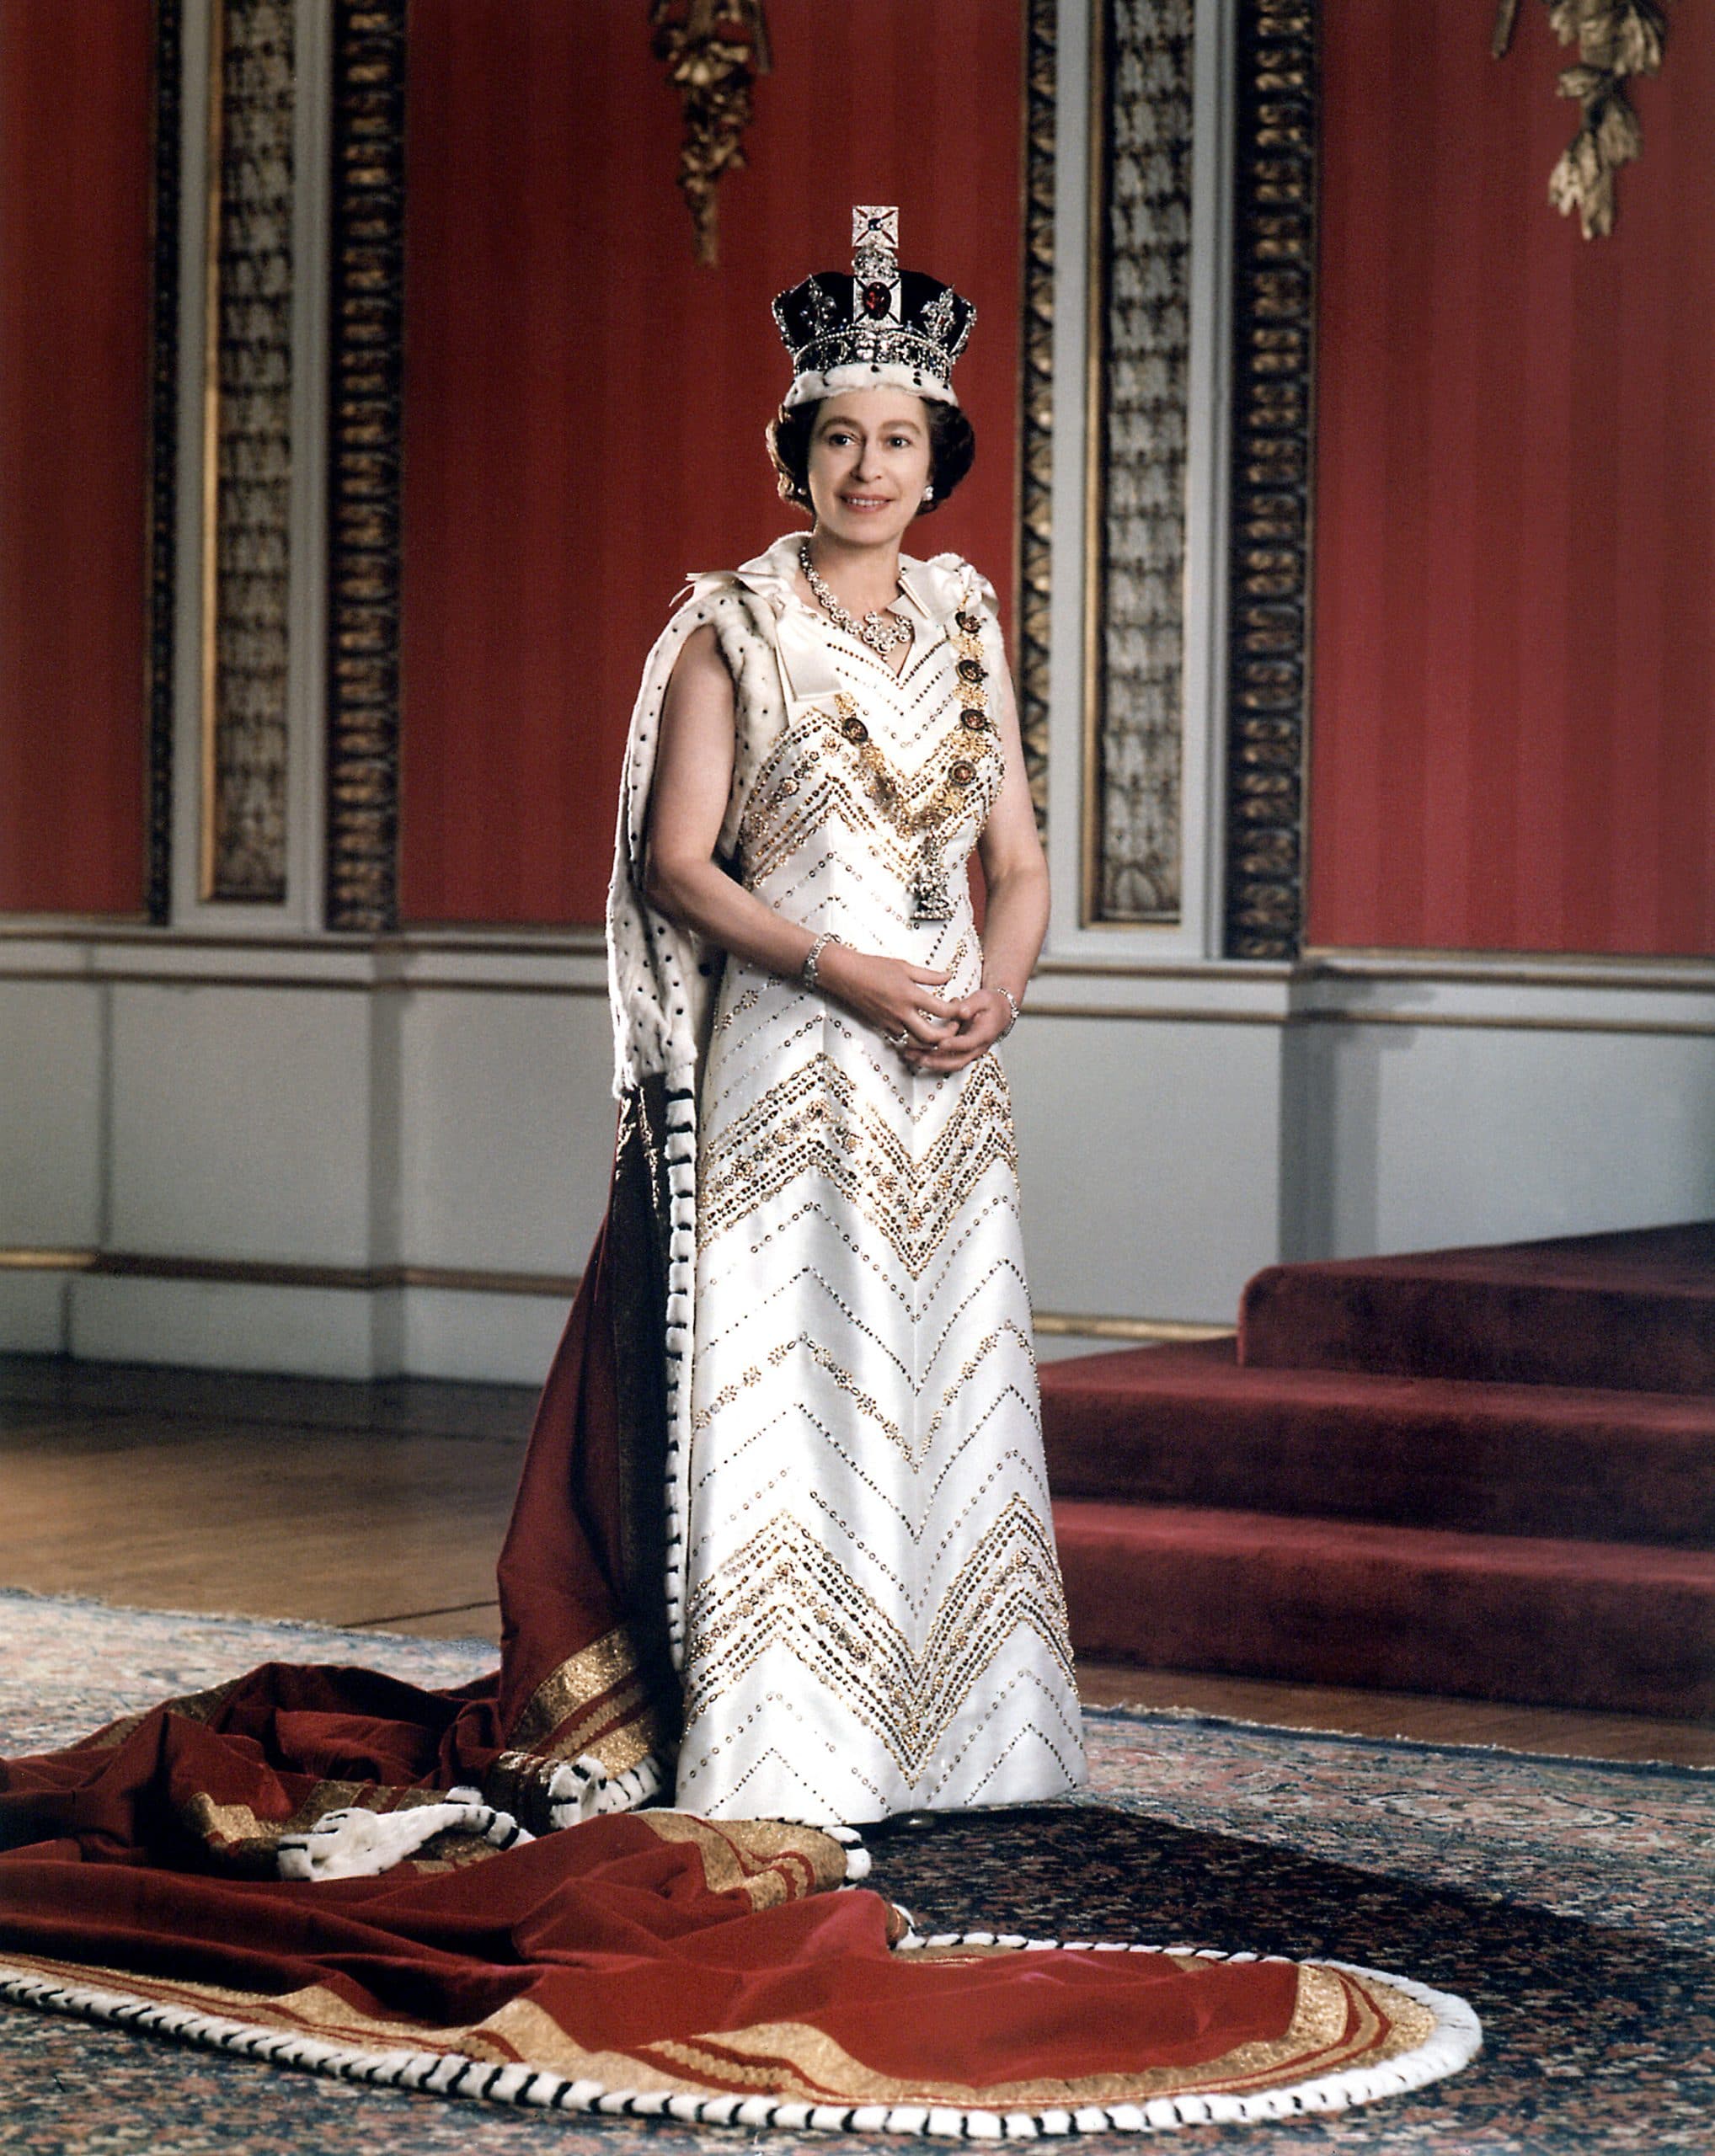 Queen Elizabeth II, c. 1960s